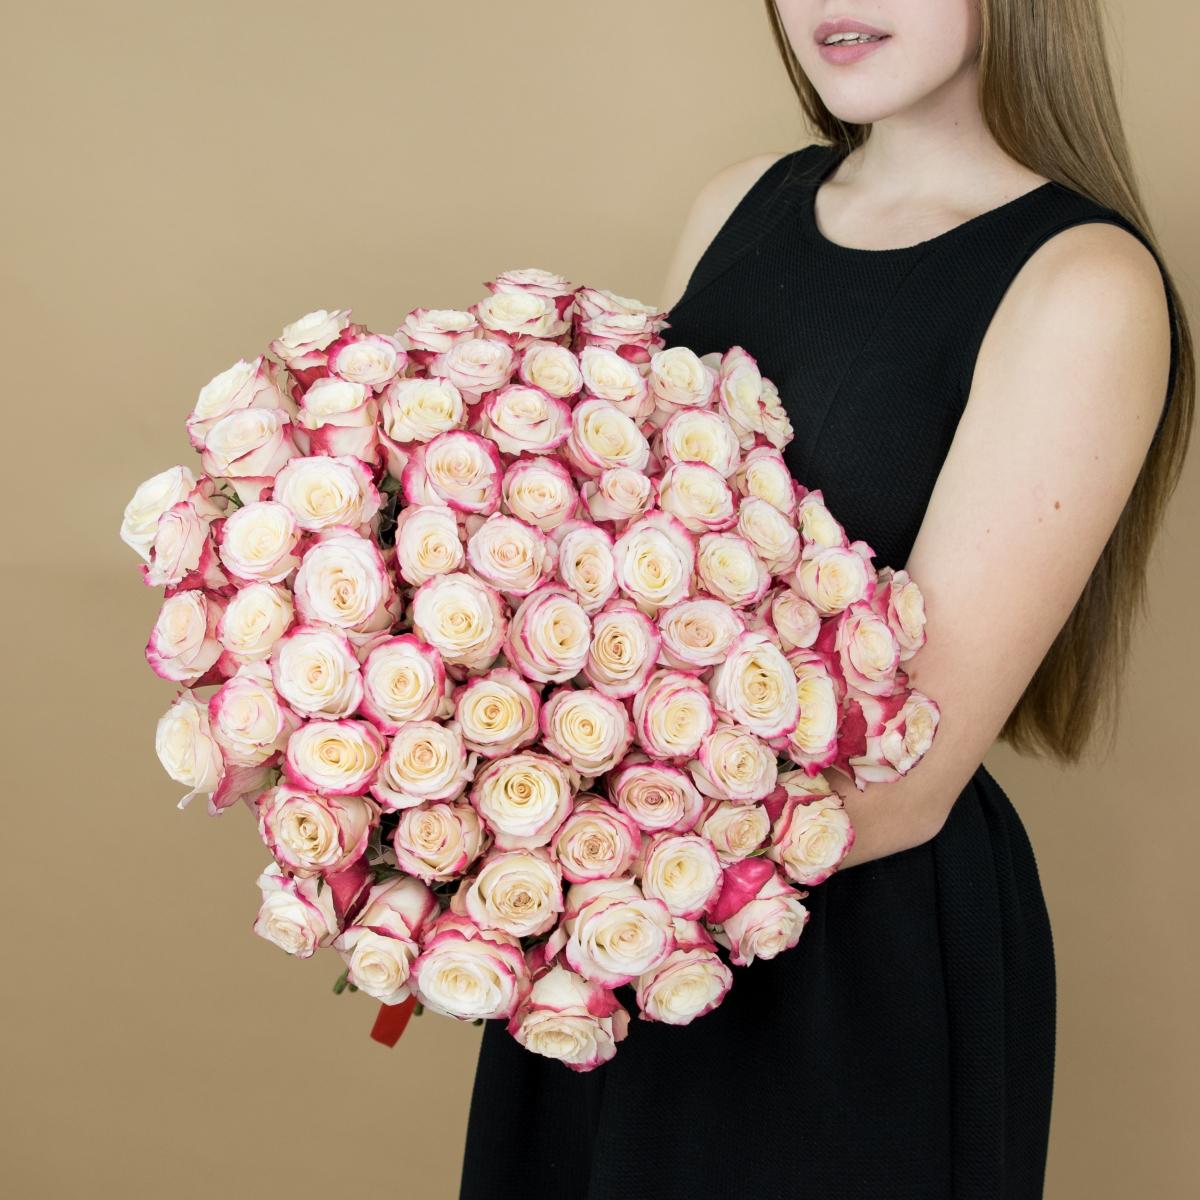 Розы красно-белые 101 шт. (40 см) код товара - 82236